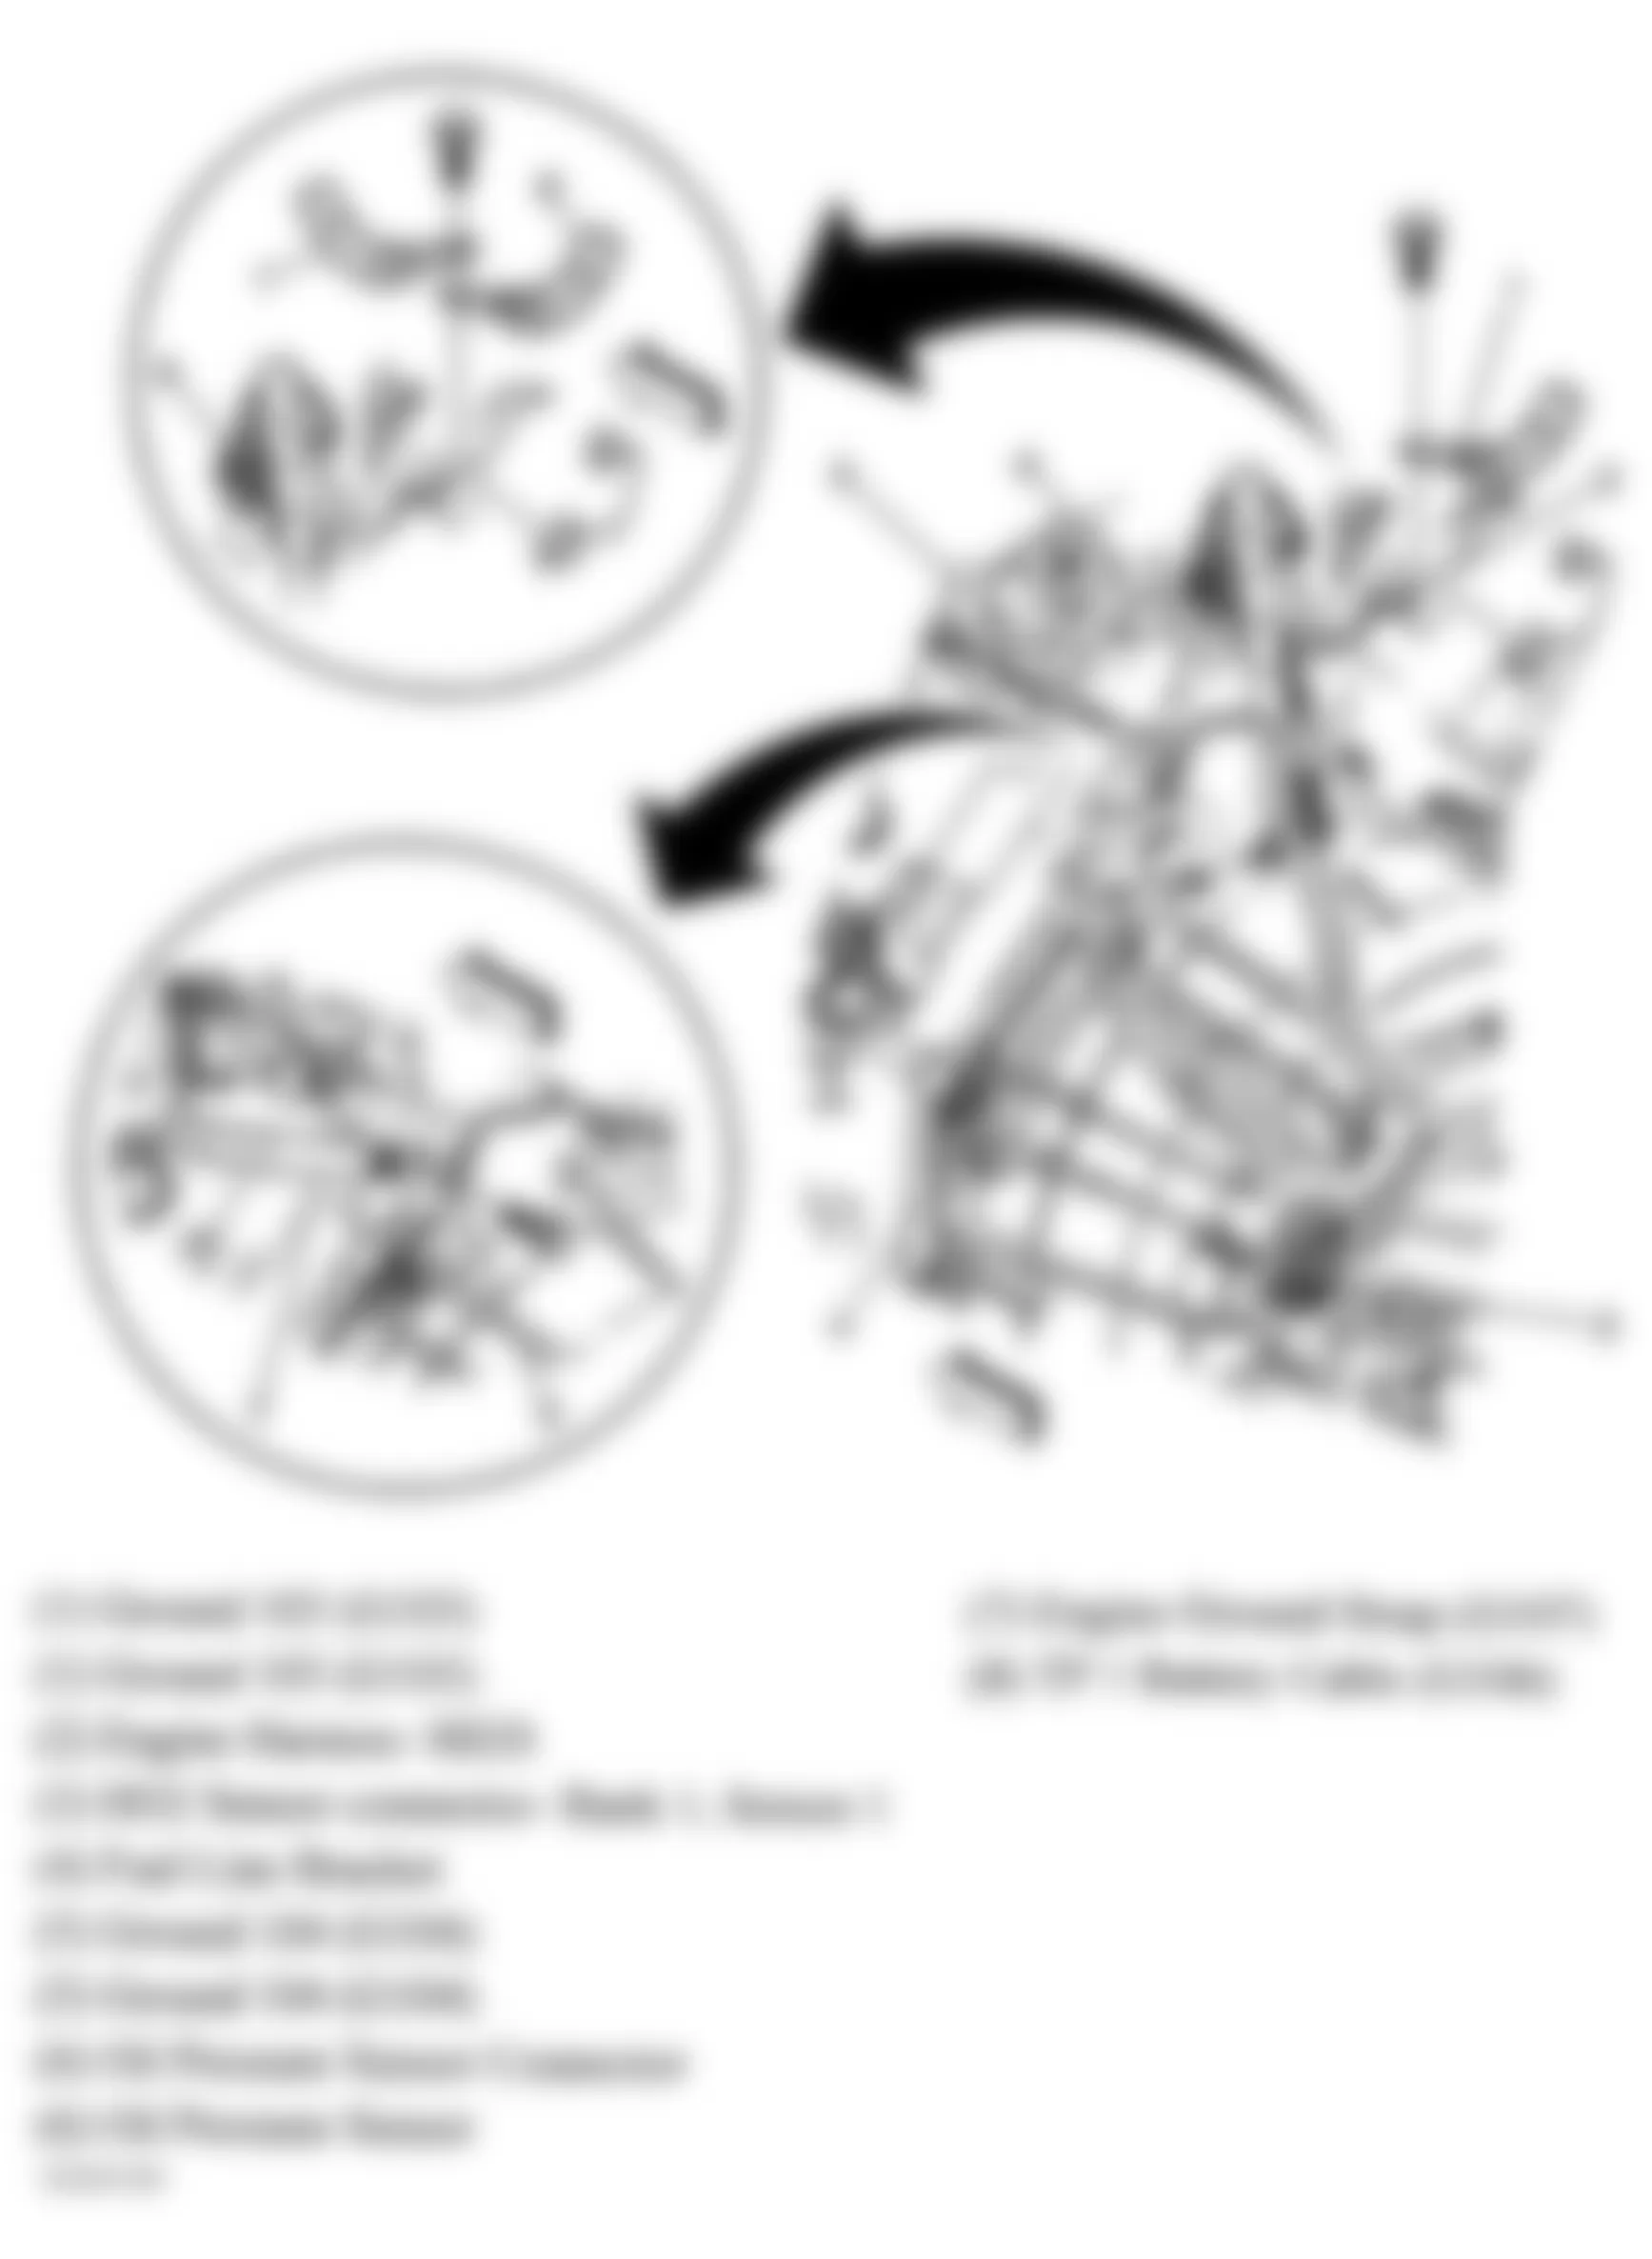 GMC Yukon Denali 2006 - Component Locations -  Rear Of Engine (4.8L, 5.3L & 6.0L)